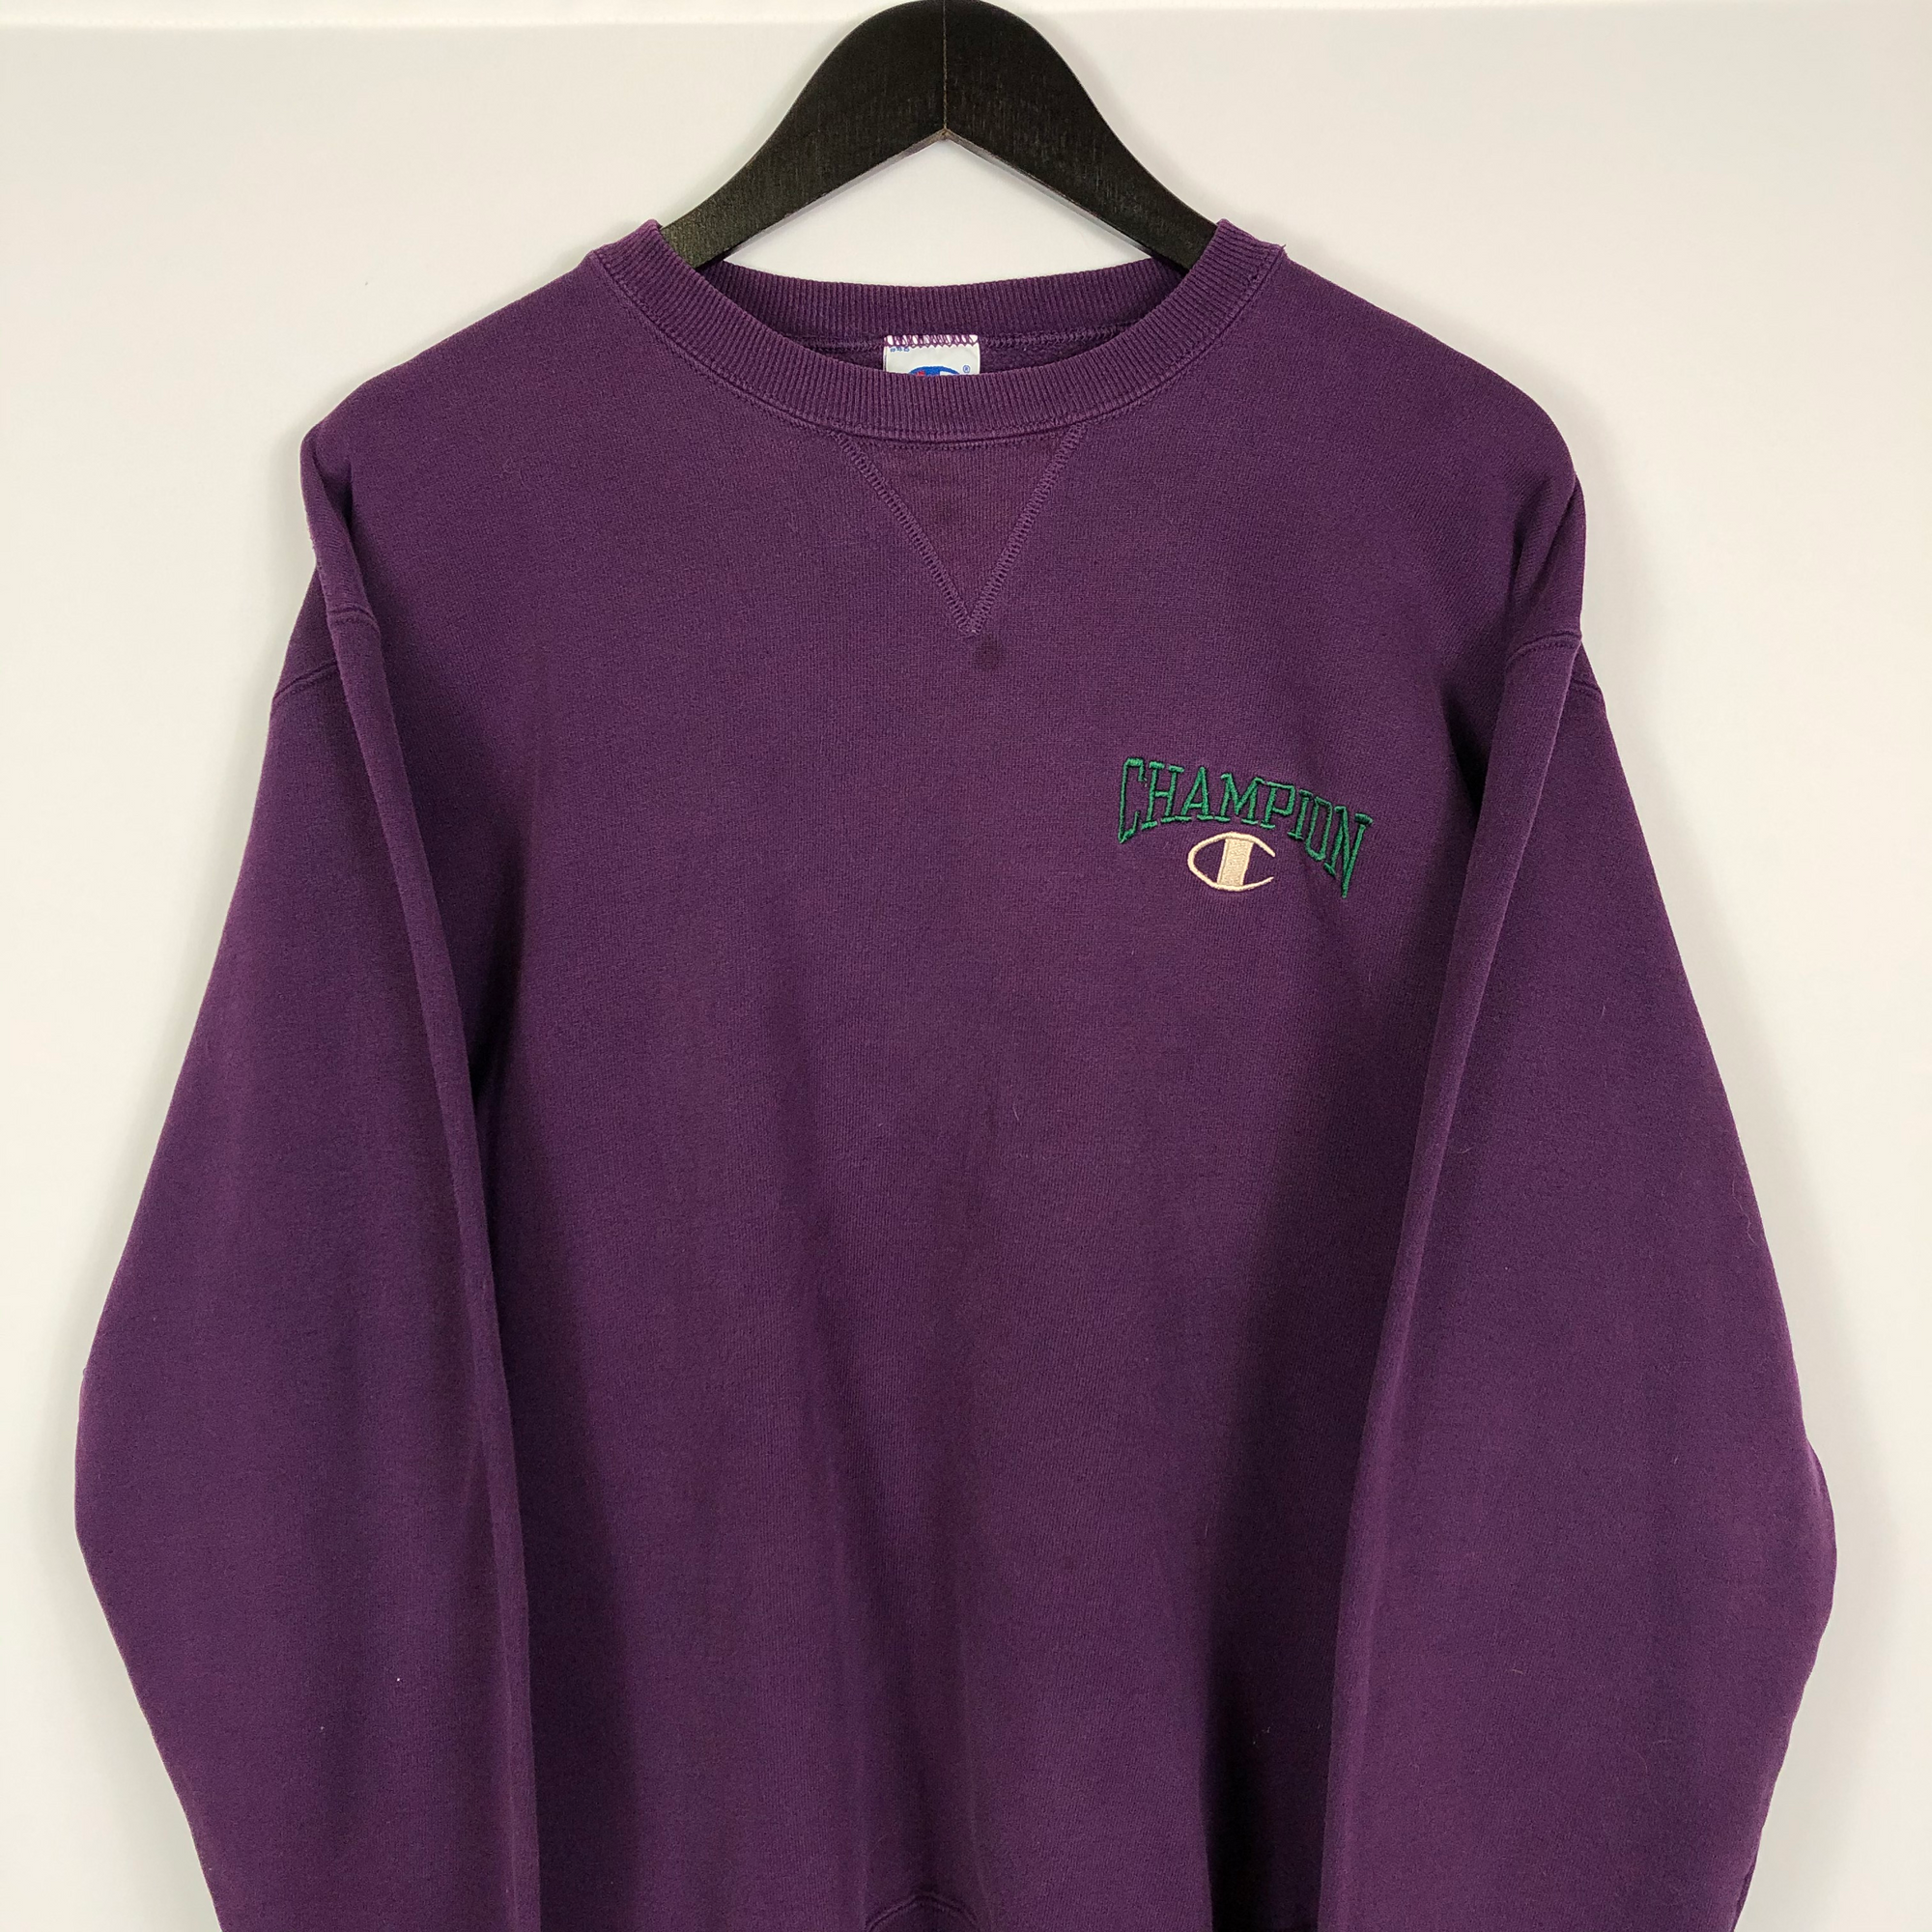 Vintage Champion Sweatshirt in Purple - XL